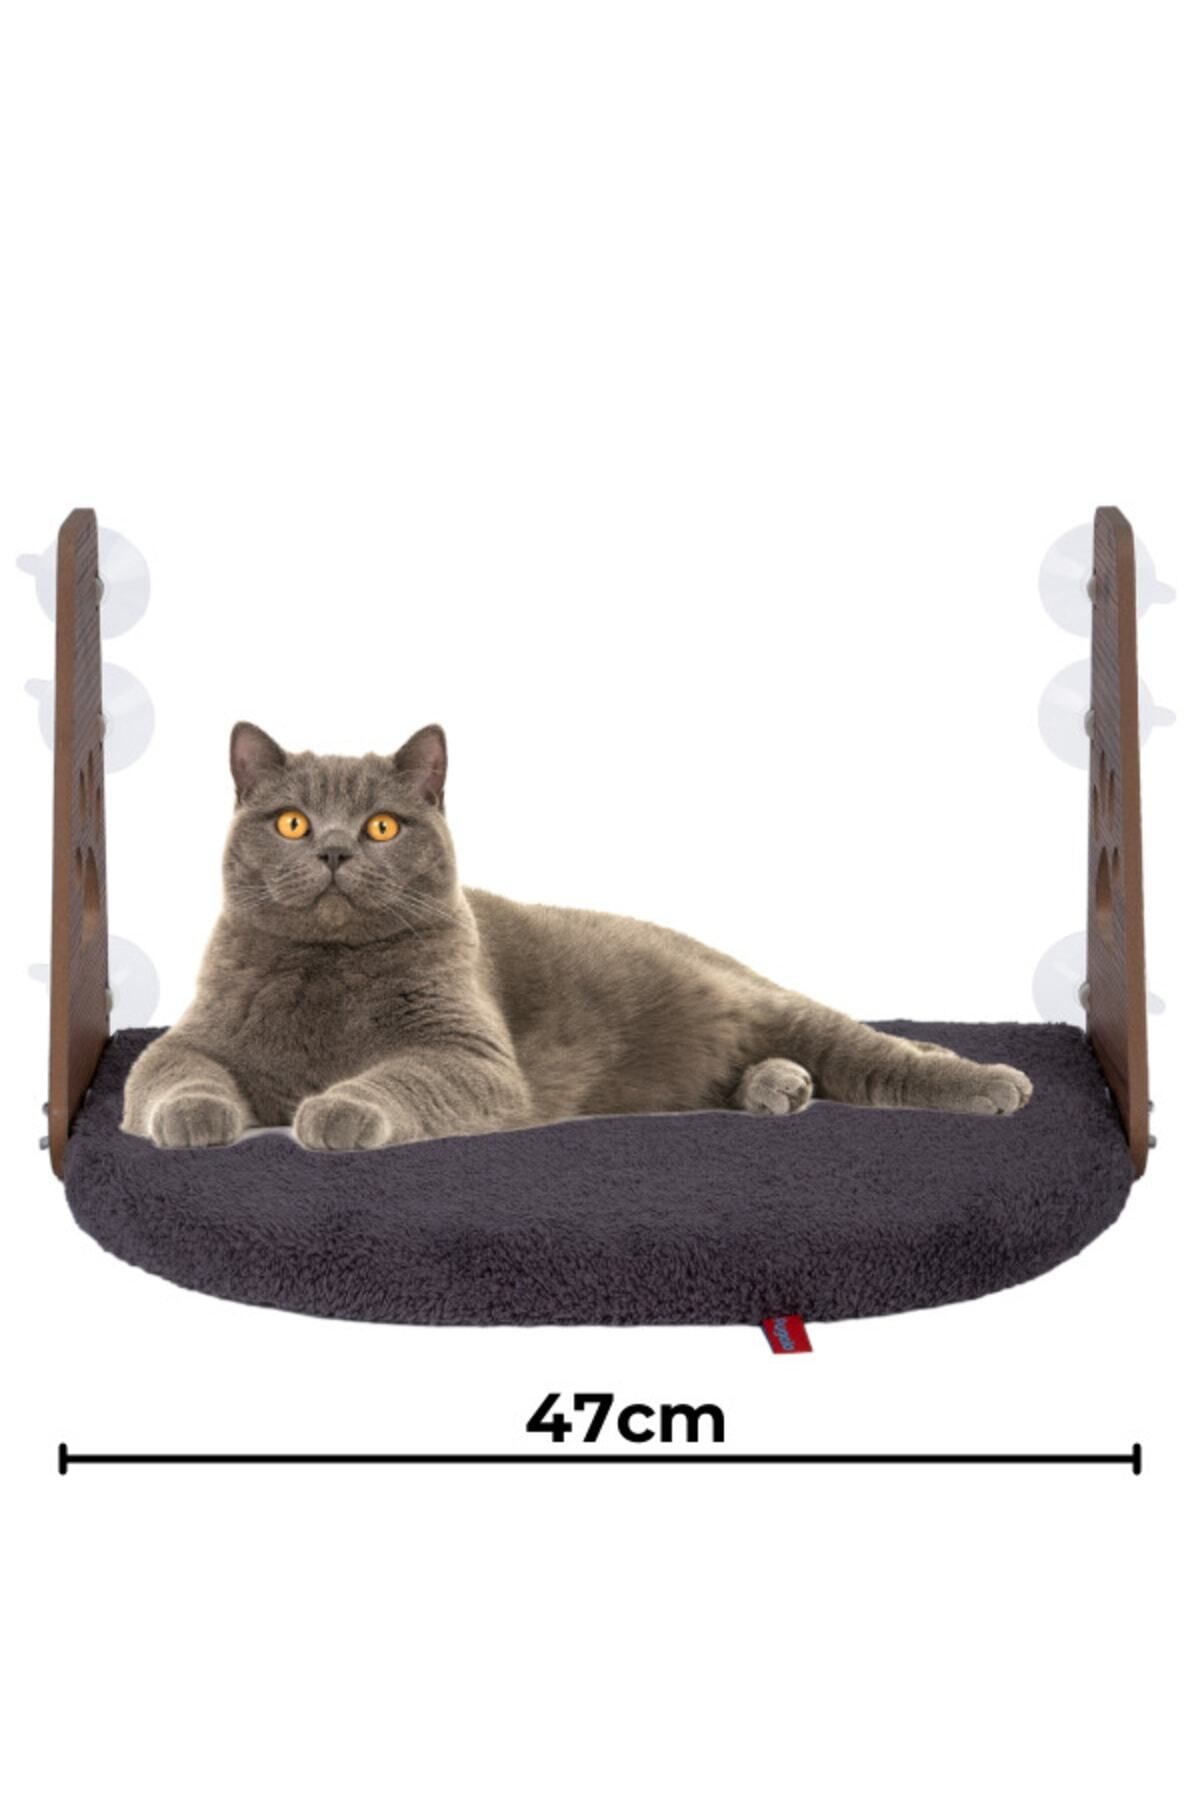 PUGALO Cam Yatağı Vantuzlu Kedi Cam Yatağı Vantuzlu Yatak Antrasit